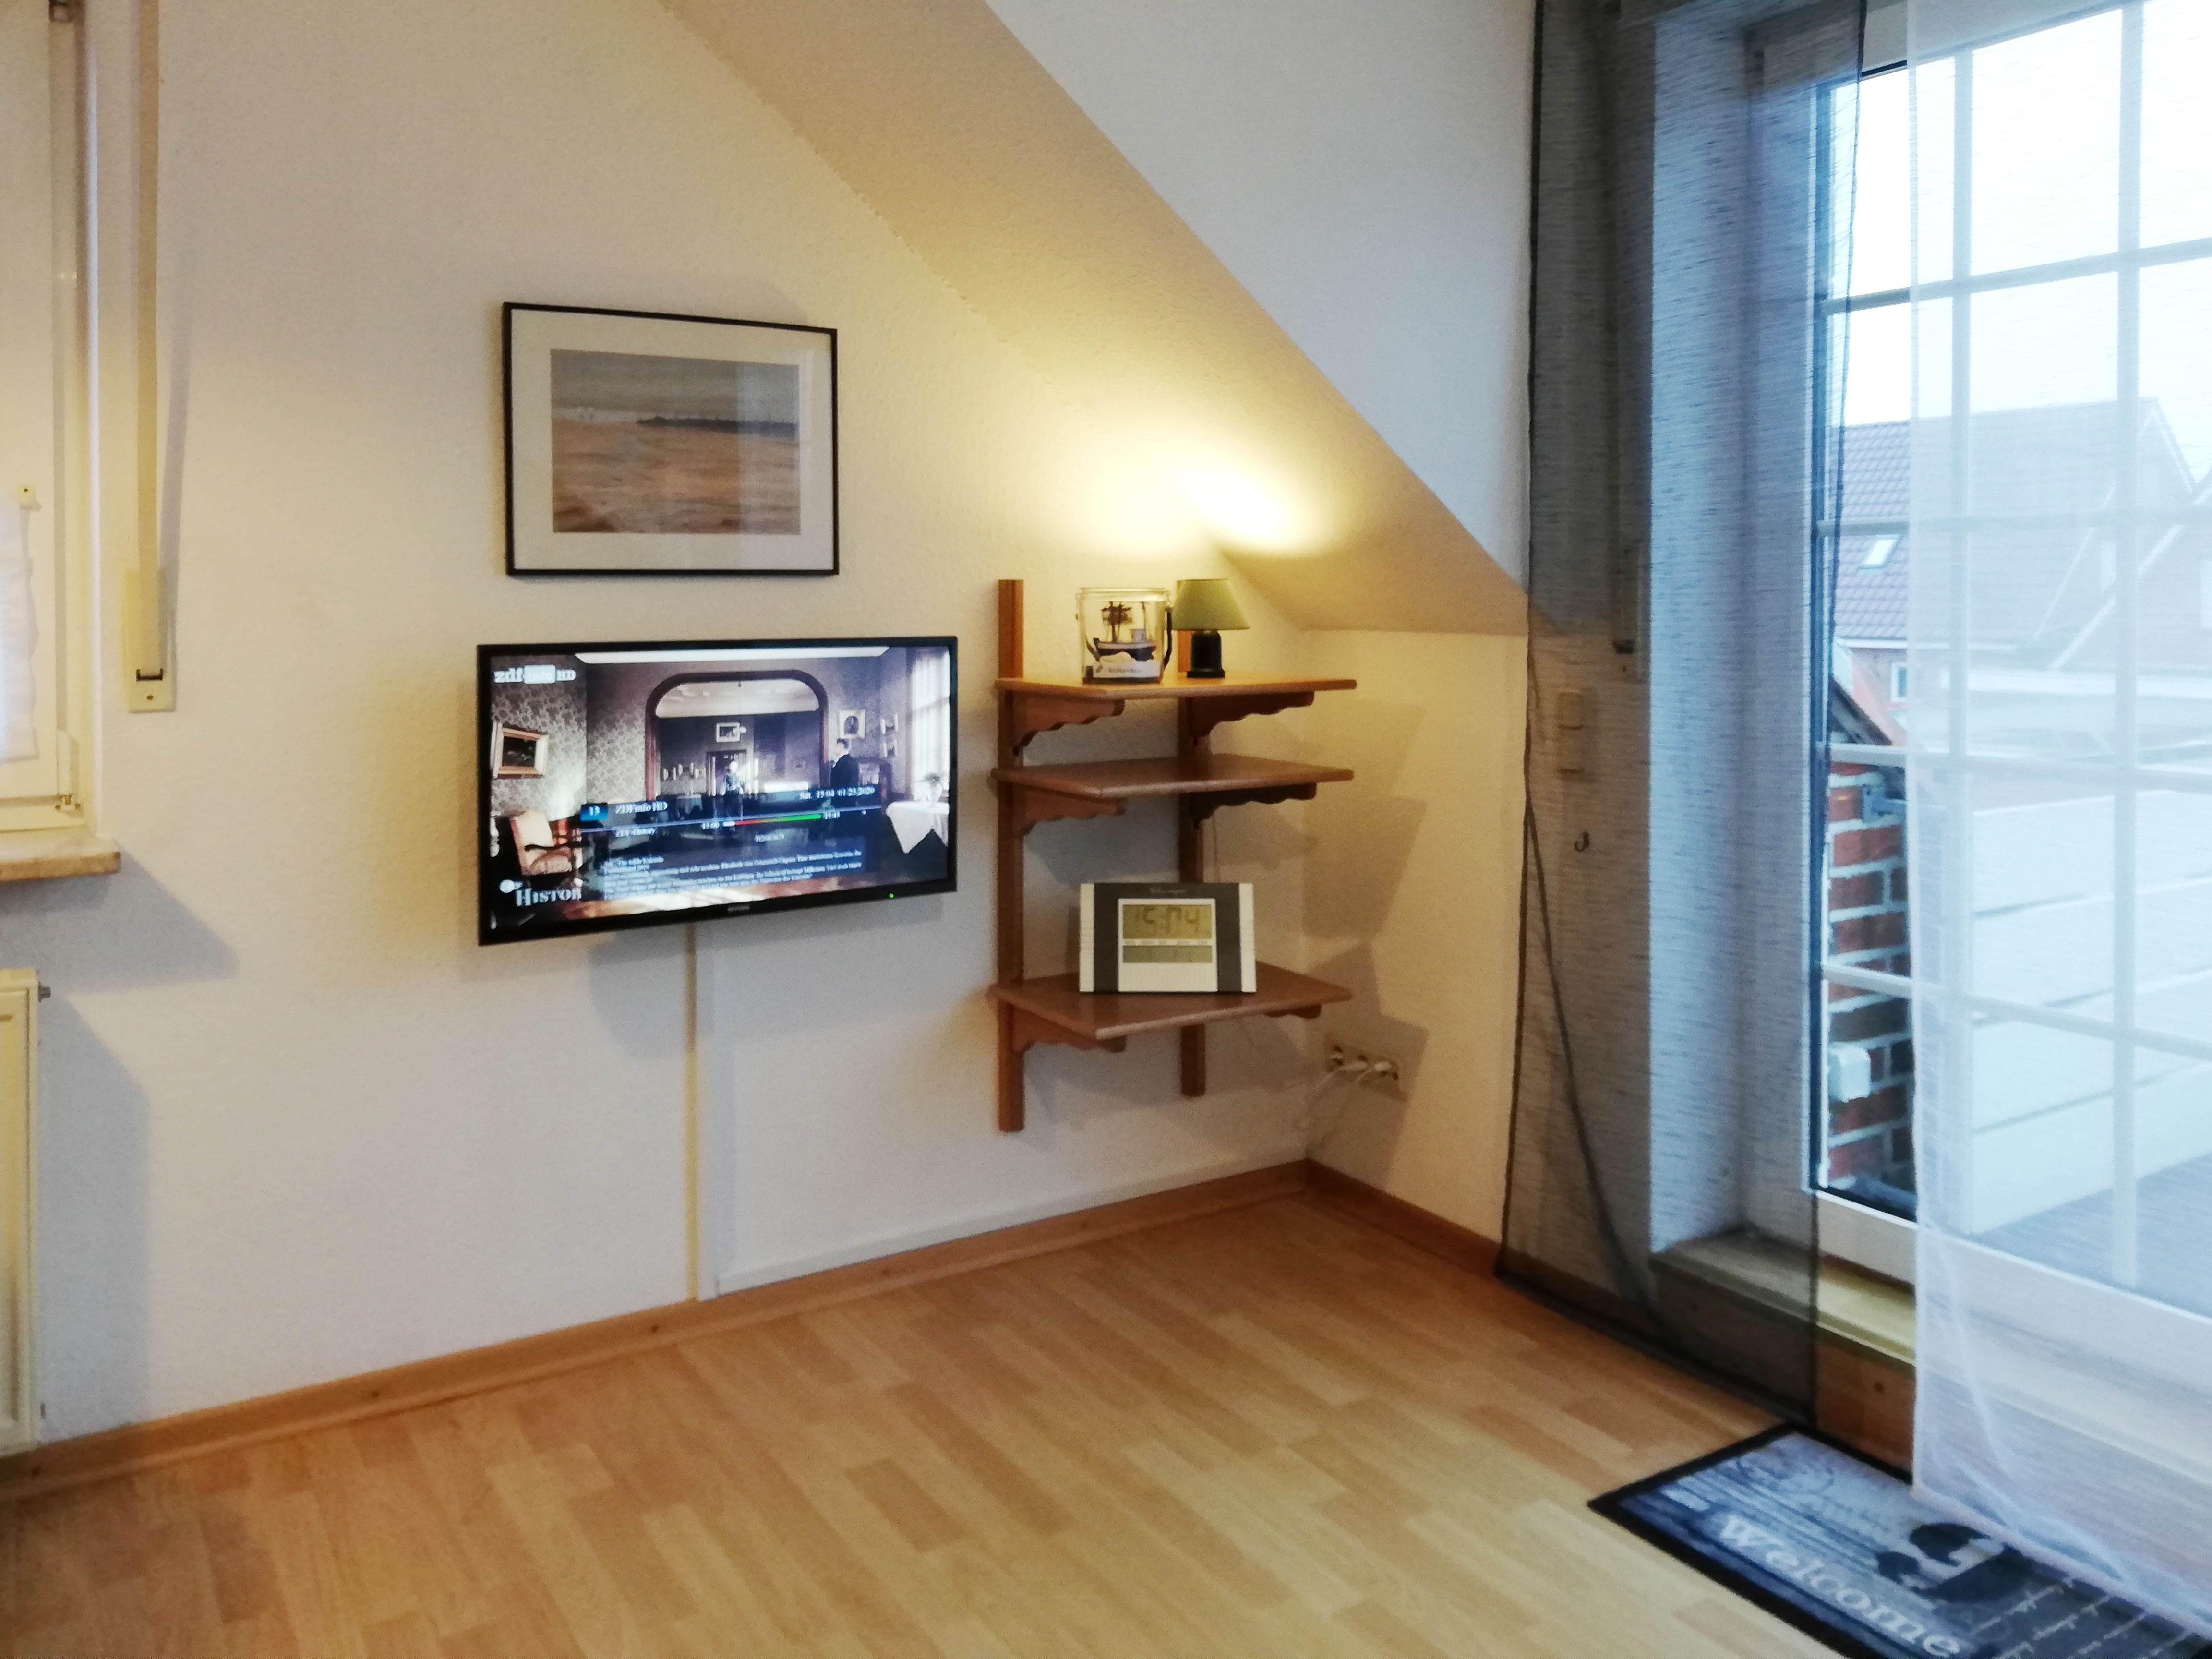 Wohnraum mit neuem TV Gerät